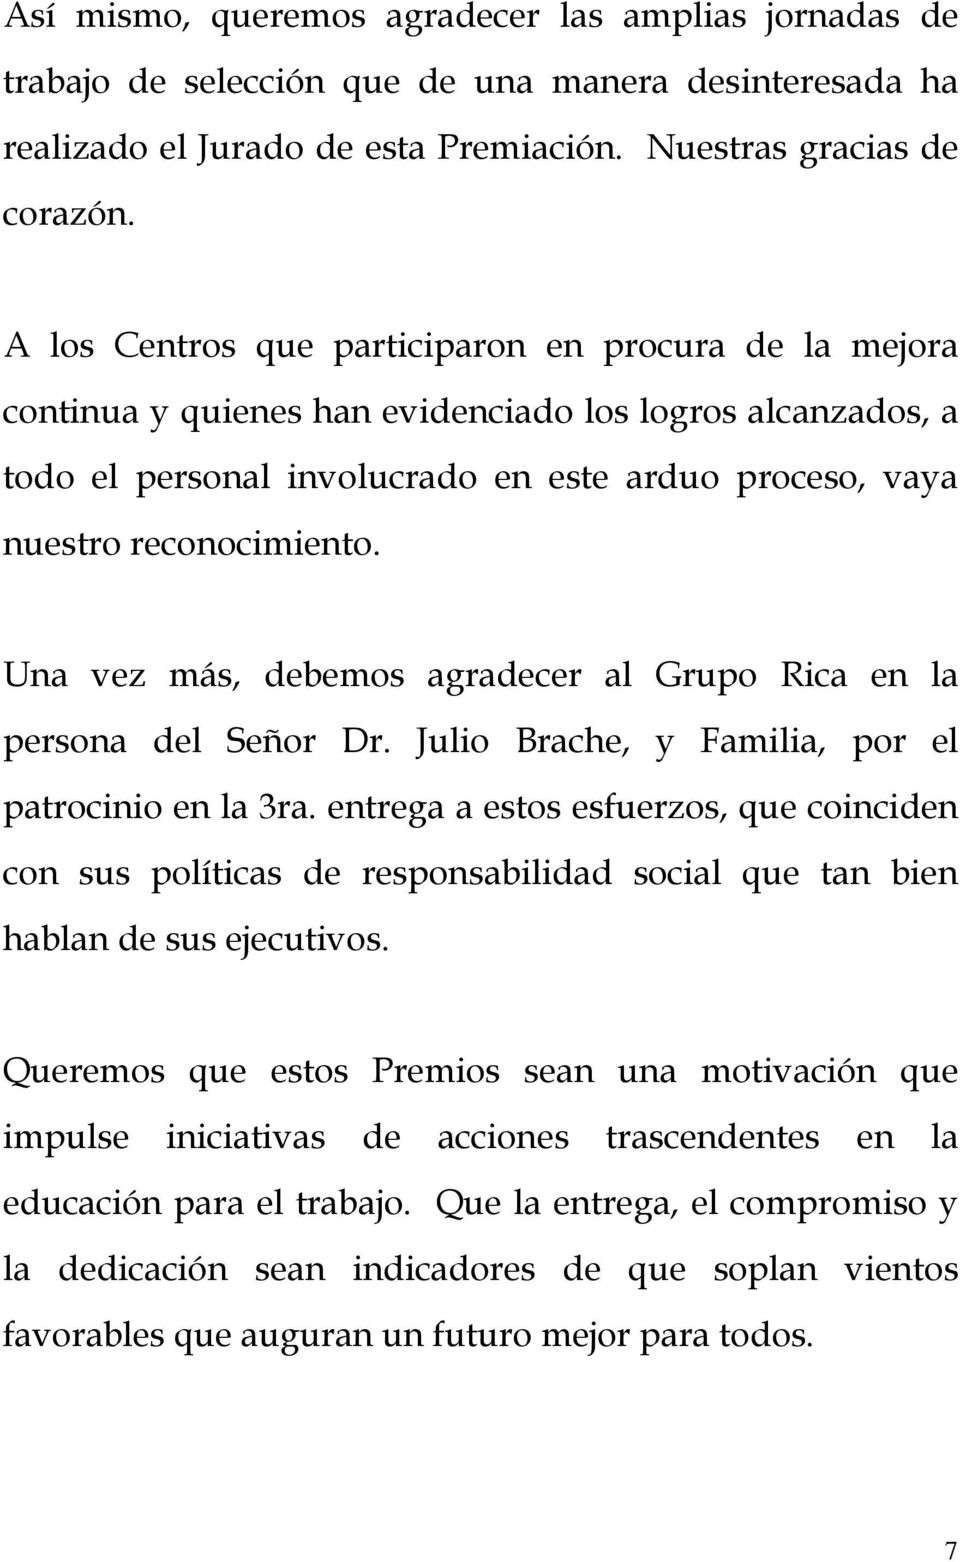 Una vez más, debemos agradecer al Grupo Rica en la persona del Señor Dr. Julio Brache, y Familia, por el patrocinio en la 3ra.